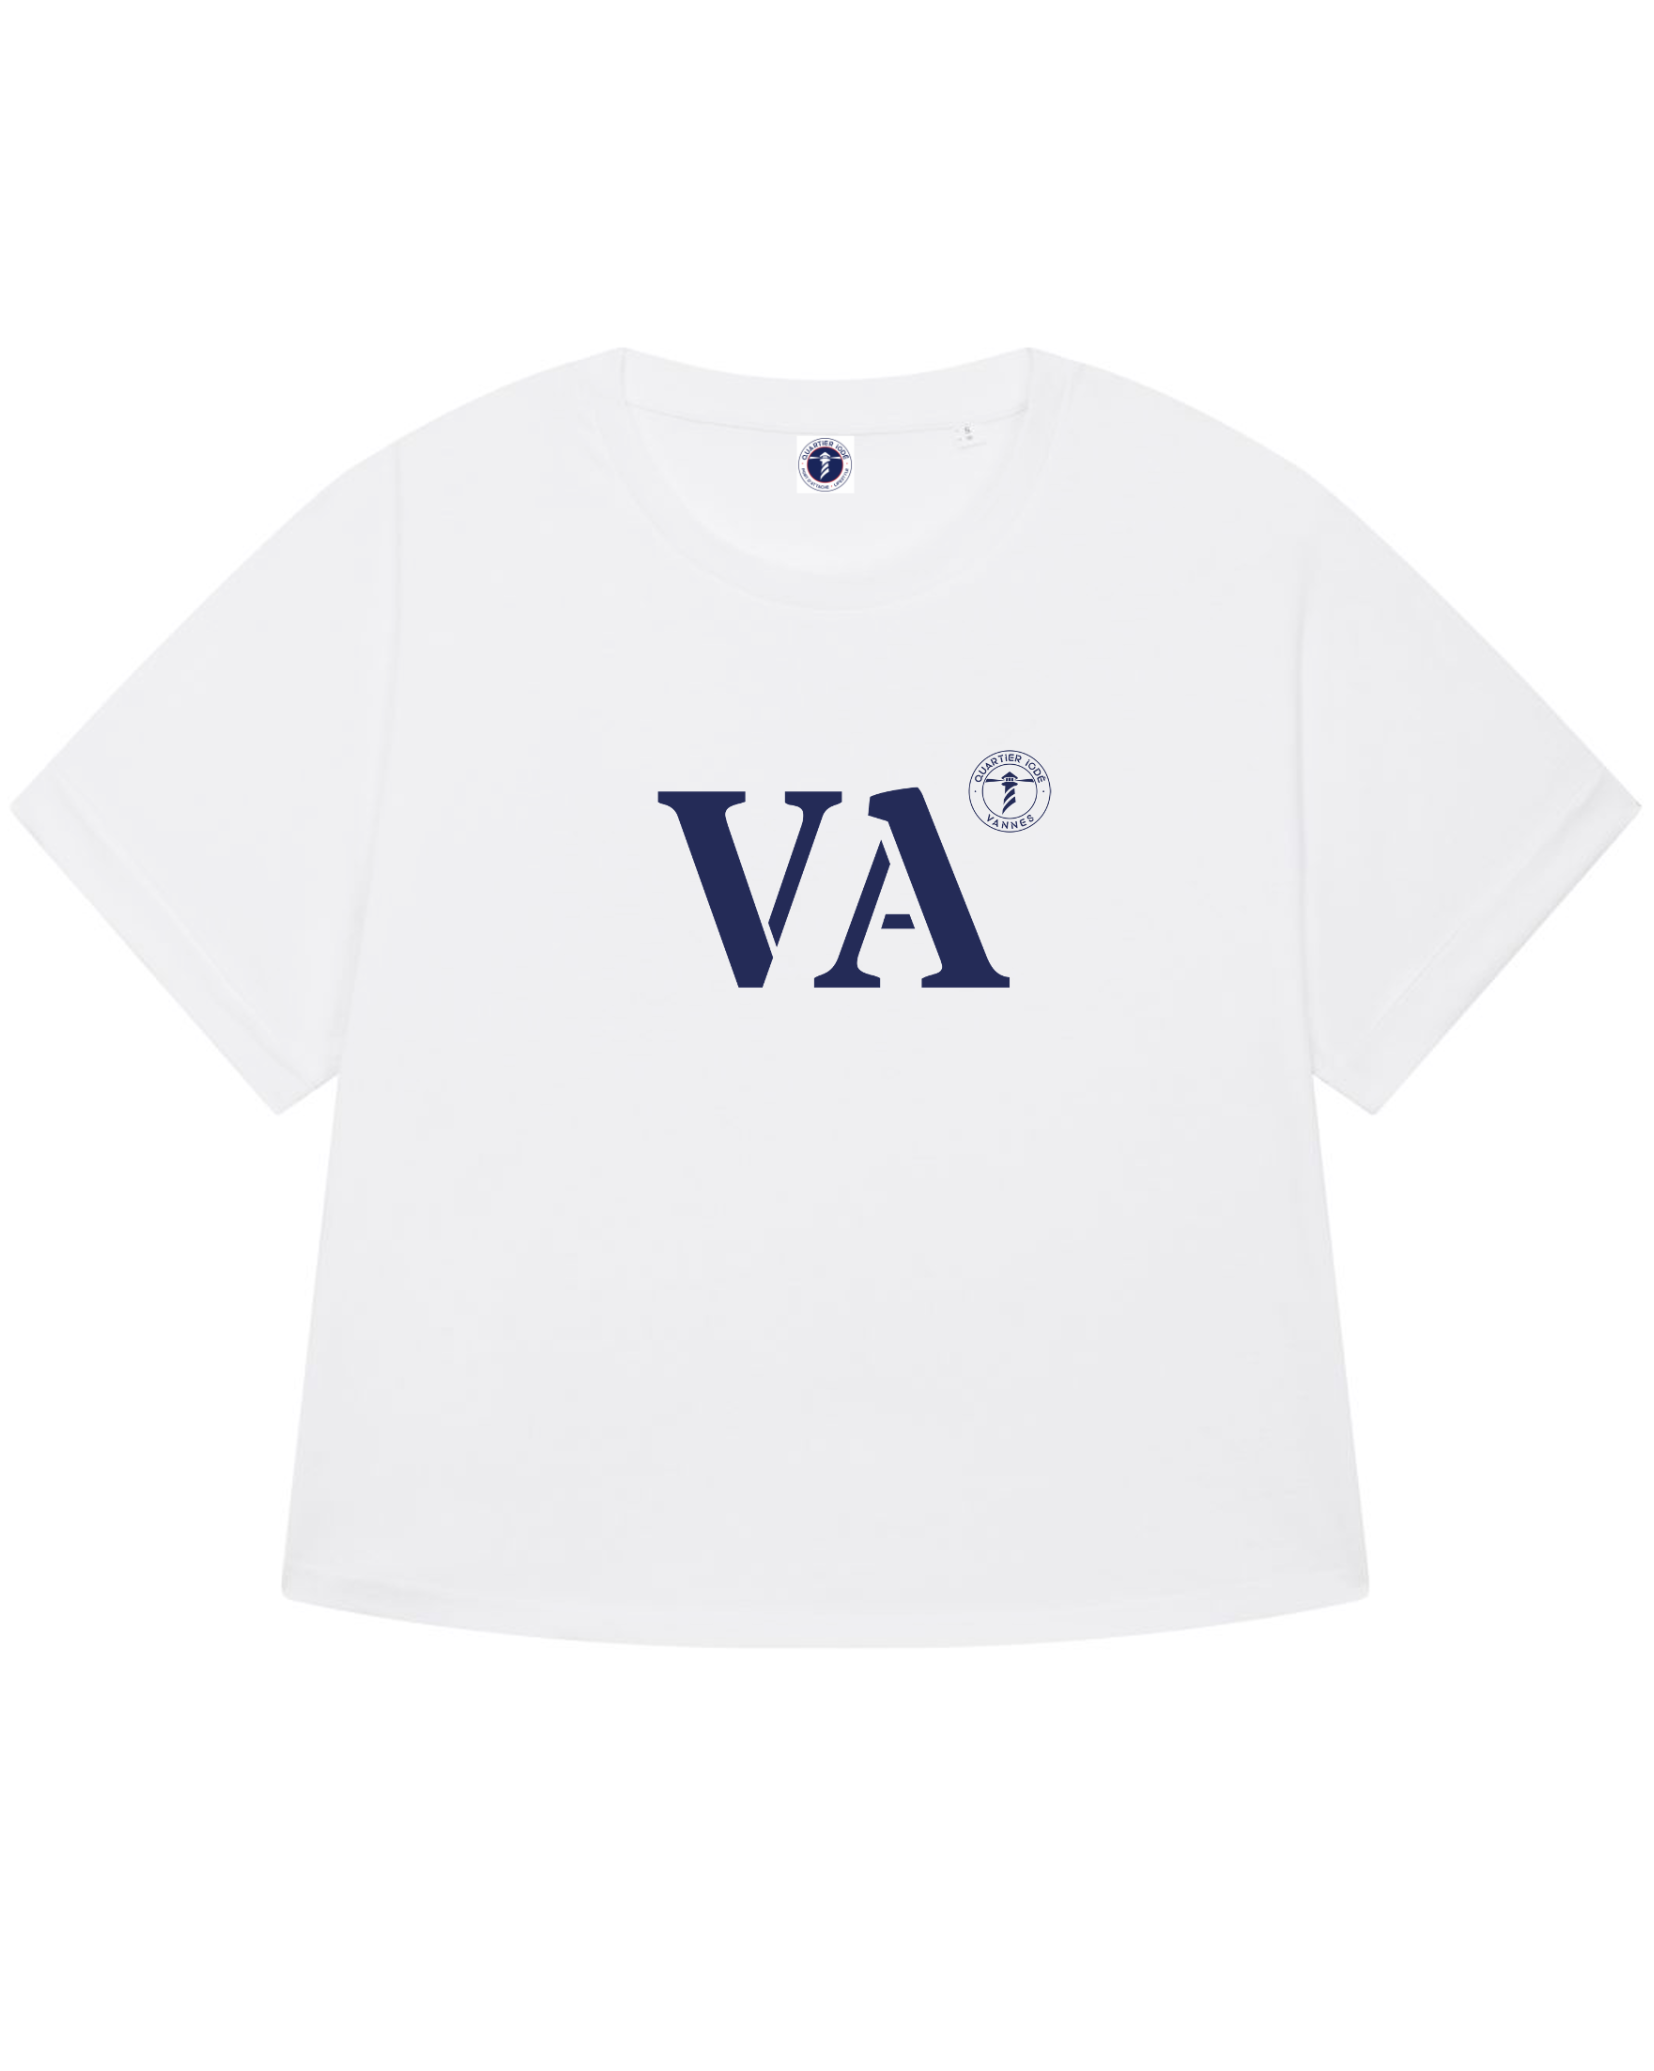 Si vous êtes attachée à Vannes, optez pour ce Tshirt blanc VA à la coupe large, oversize. Idéal pour un style féminin décontracté. Quartier Iodé est une marque de vêtement bretonne.